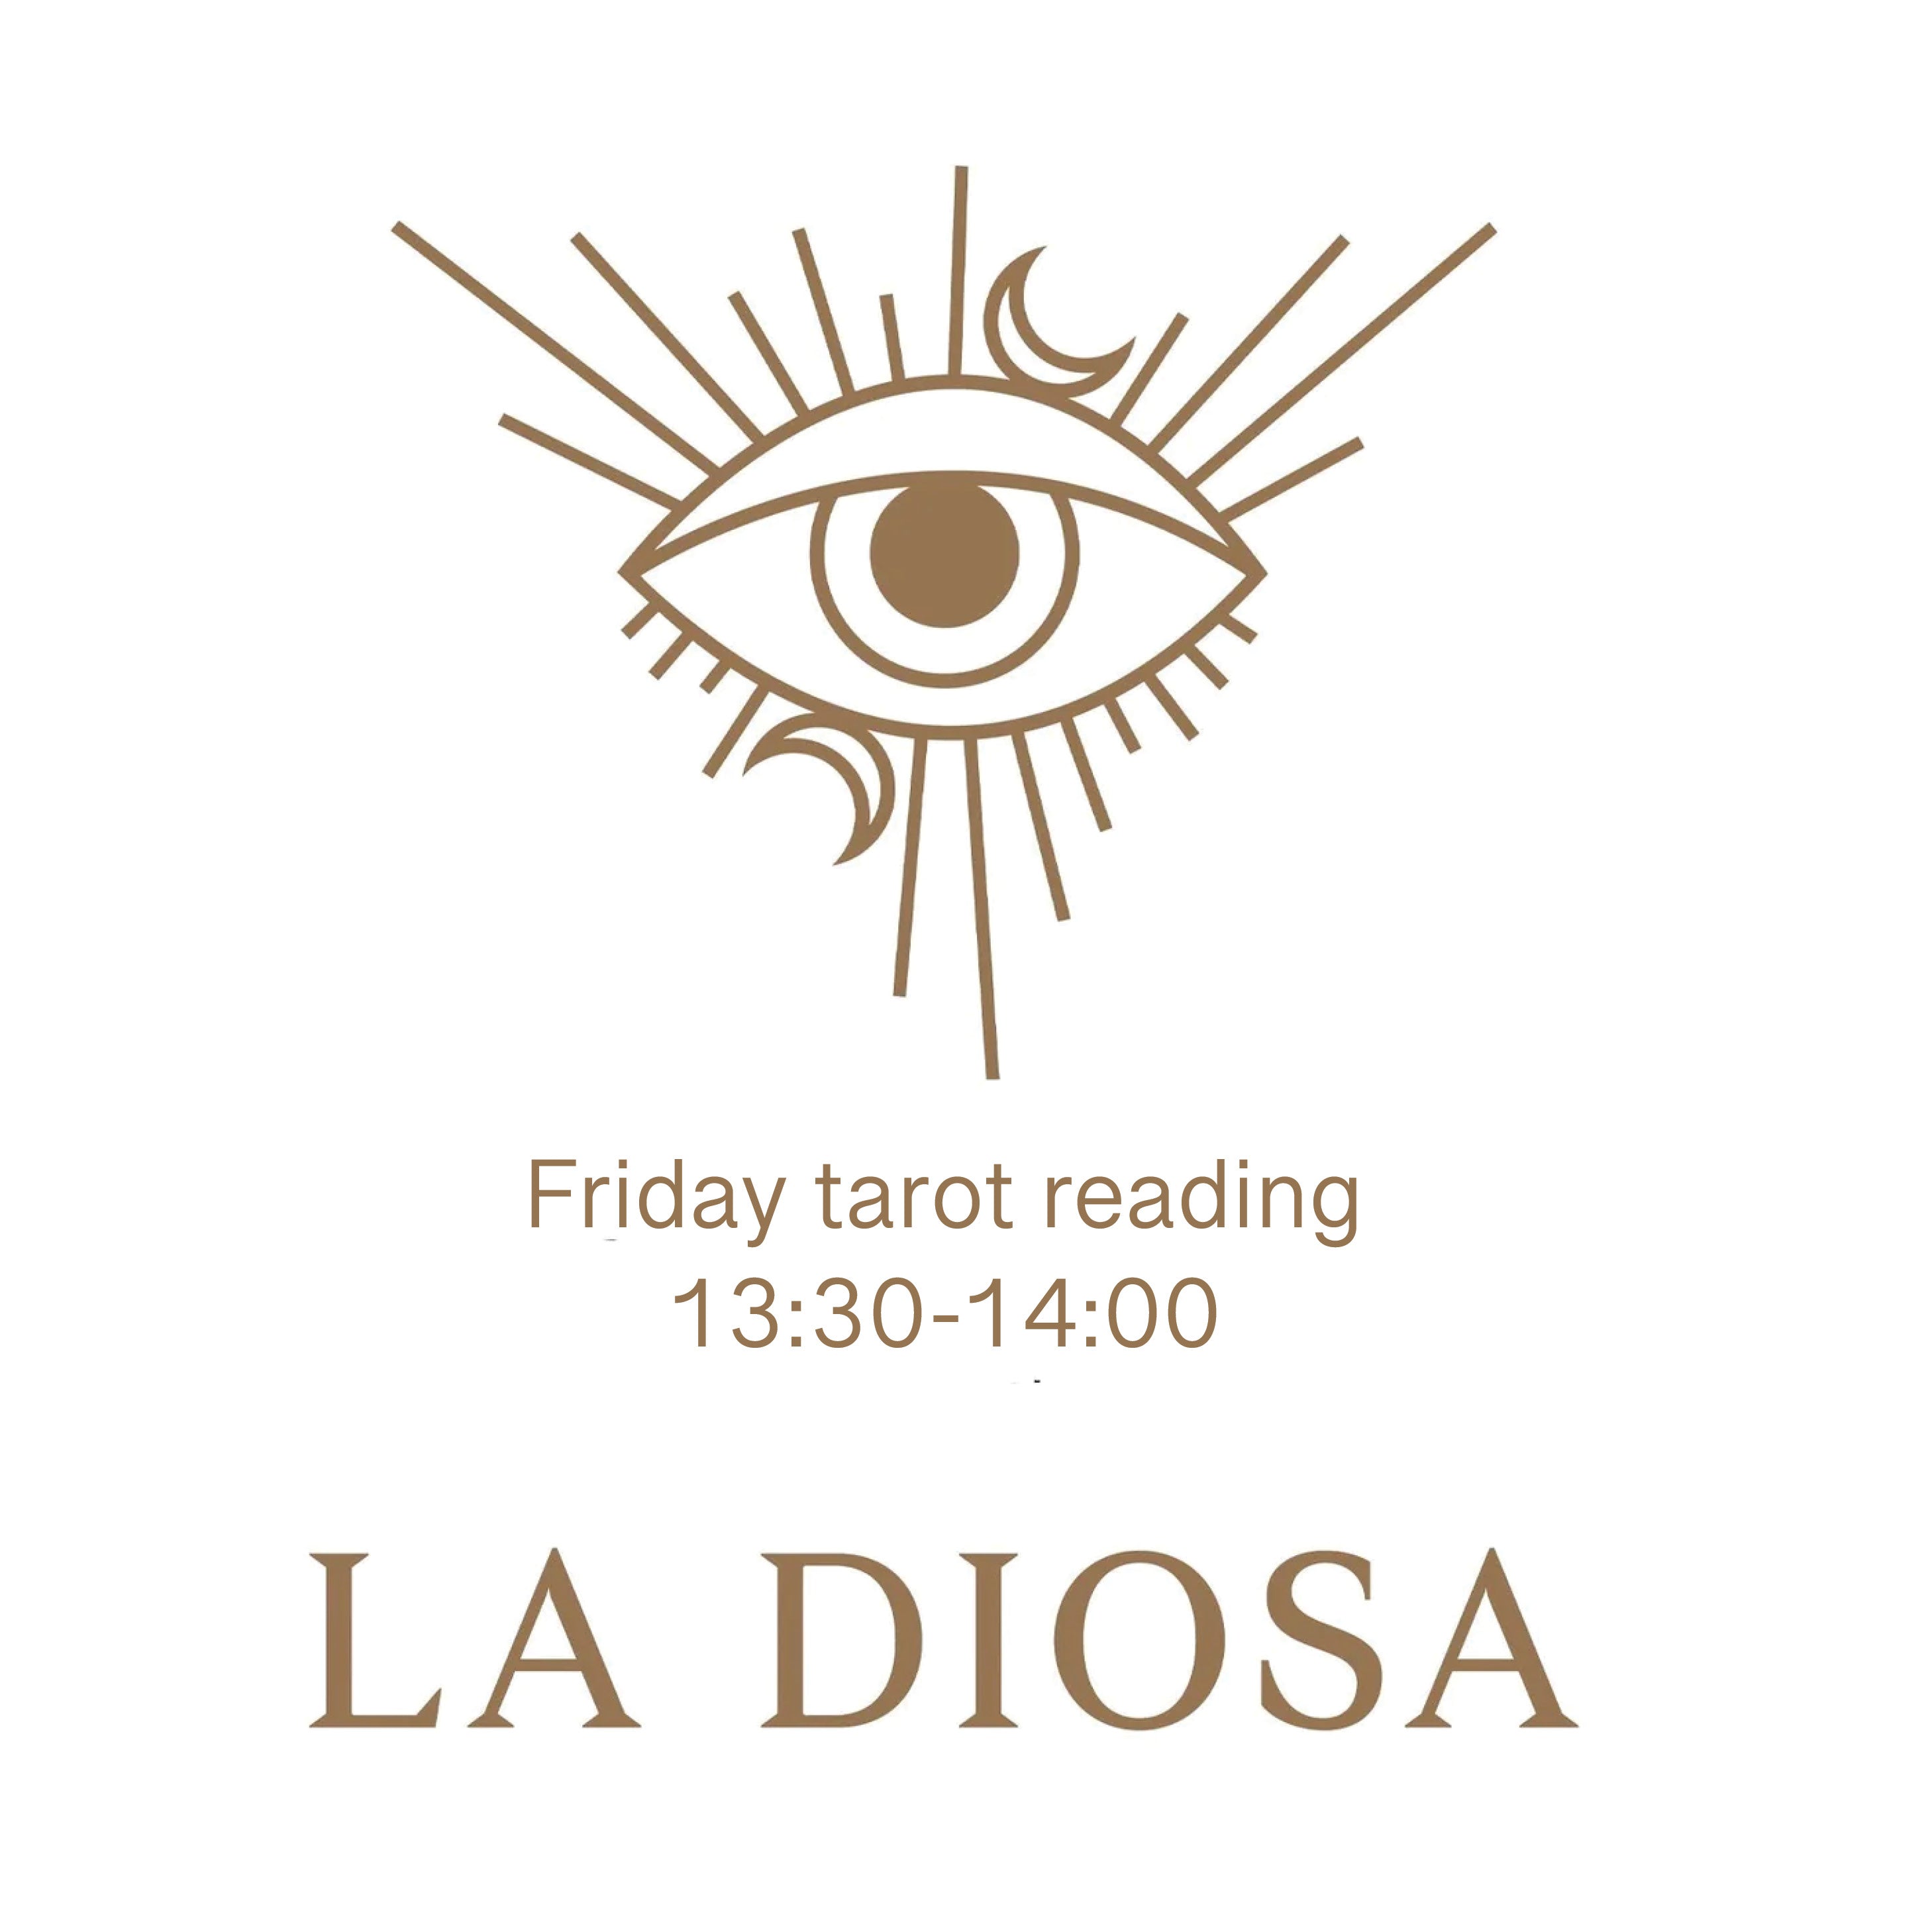 Tarot walk in readings every Friday